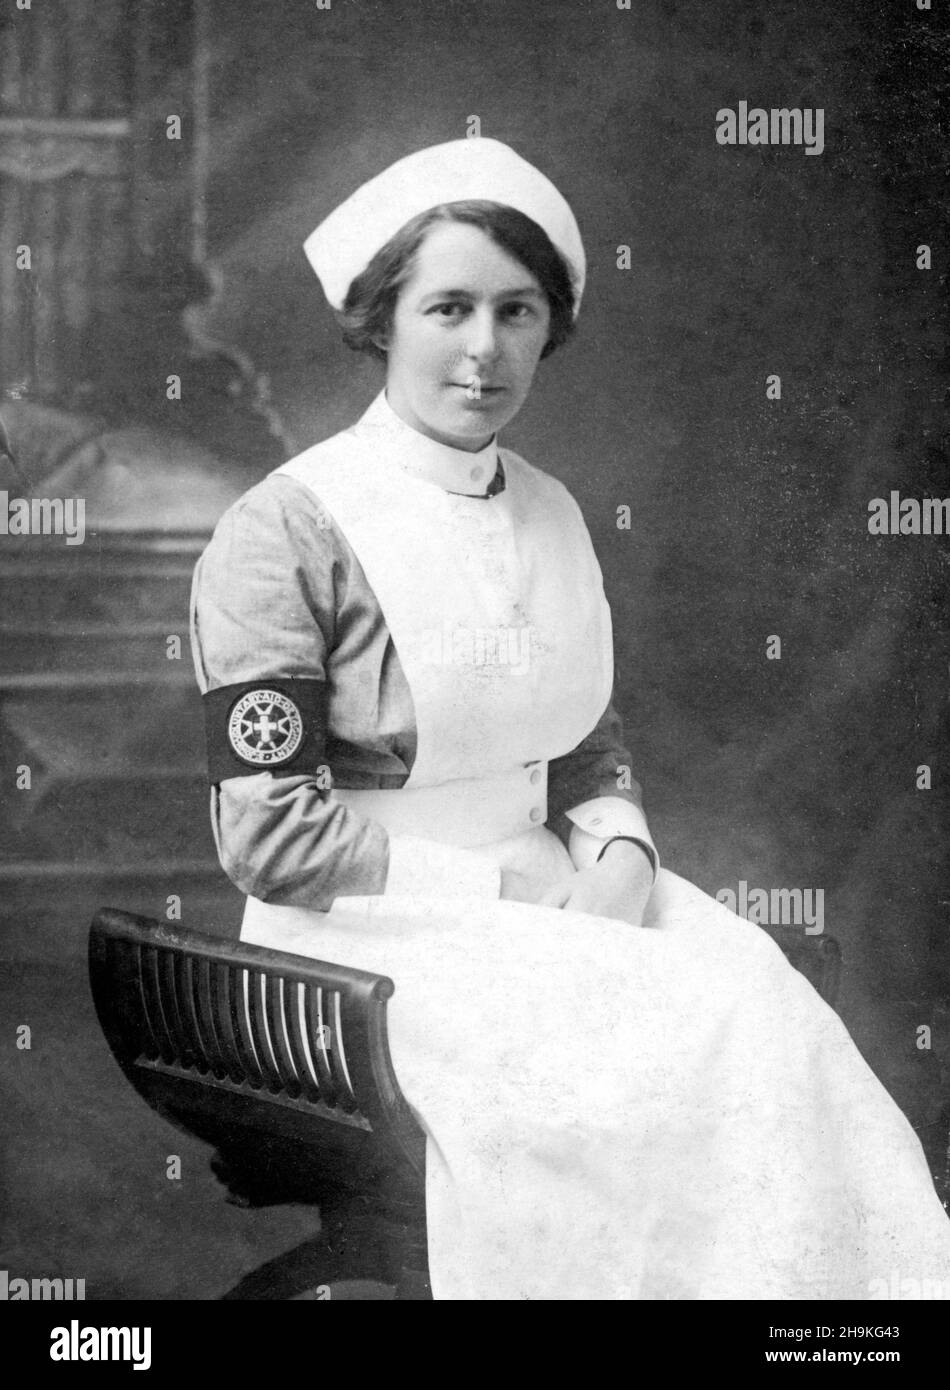 1915. Photo portrait de l'infirmière Isabel Dagwell du détachement d'aide volontaire de St John (VAD).Elle a servi entre 1915-1918 dans le cadre des services médicaux territoriaux de l'armée britannique en France. Banque D'Images